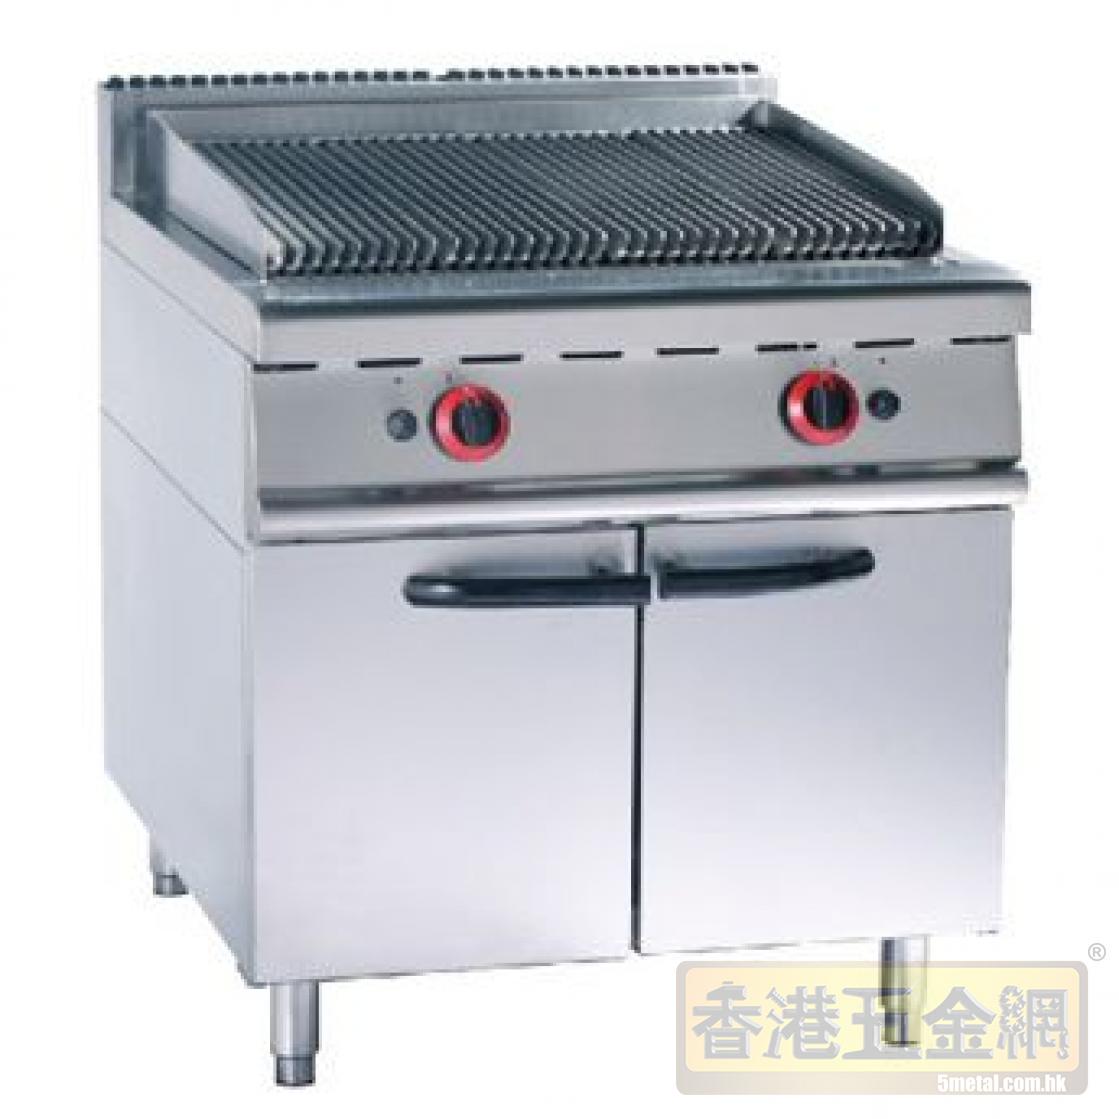 訂造-訂做-烤爐-落地式豪華烤爐系列-岩火燒烤爐連櫃座